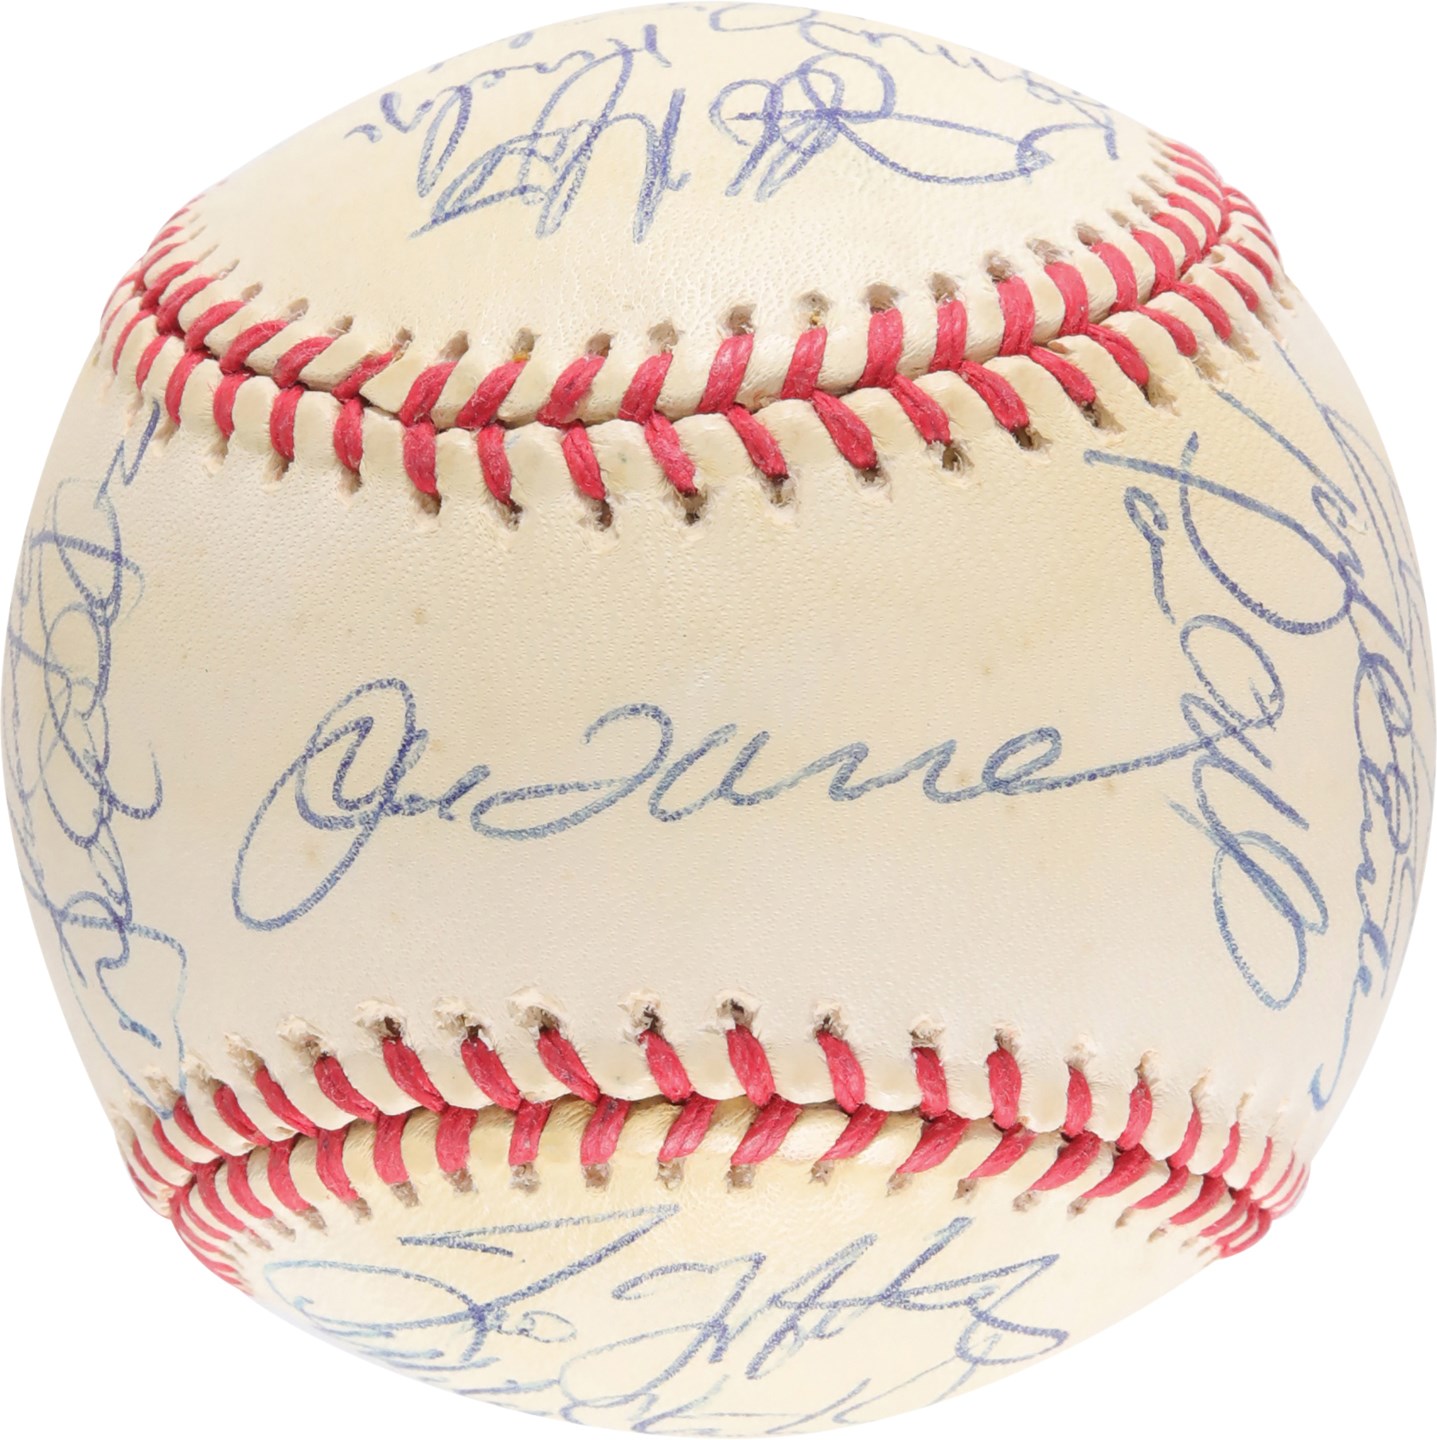 - 1999 World Champion New York Yankees Team-Signed Baseball w/Jeter & Steinbrenner (JSA)